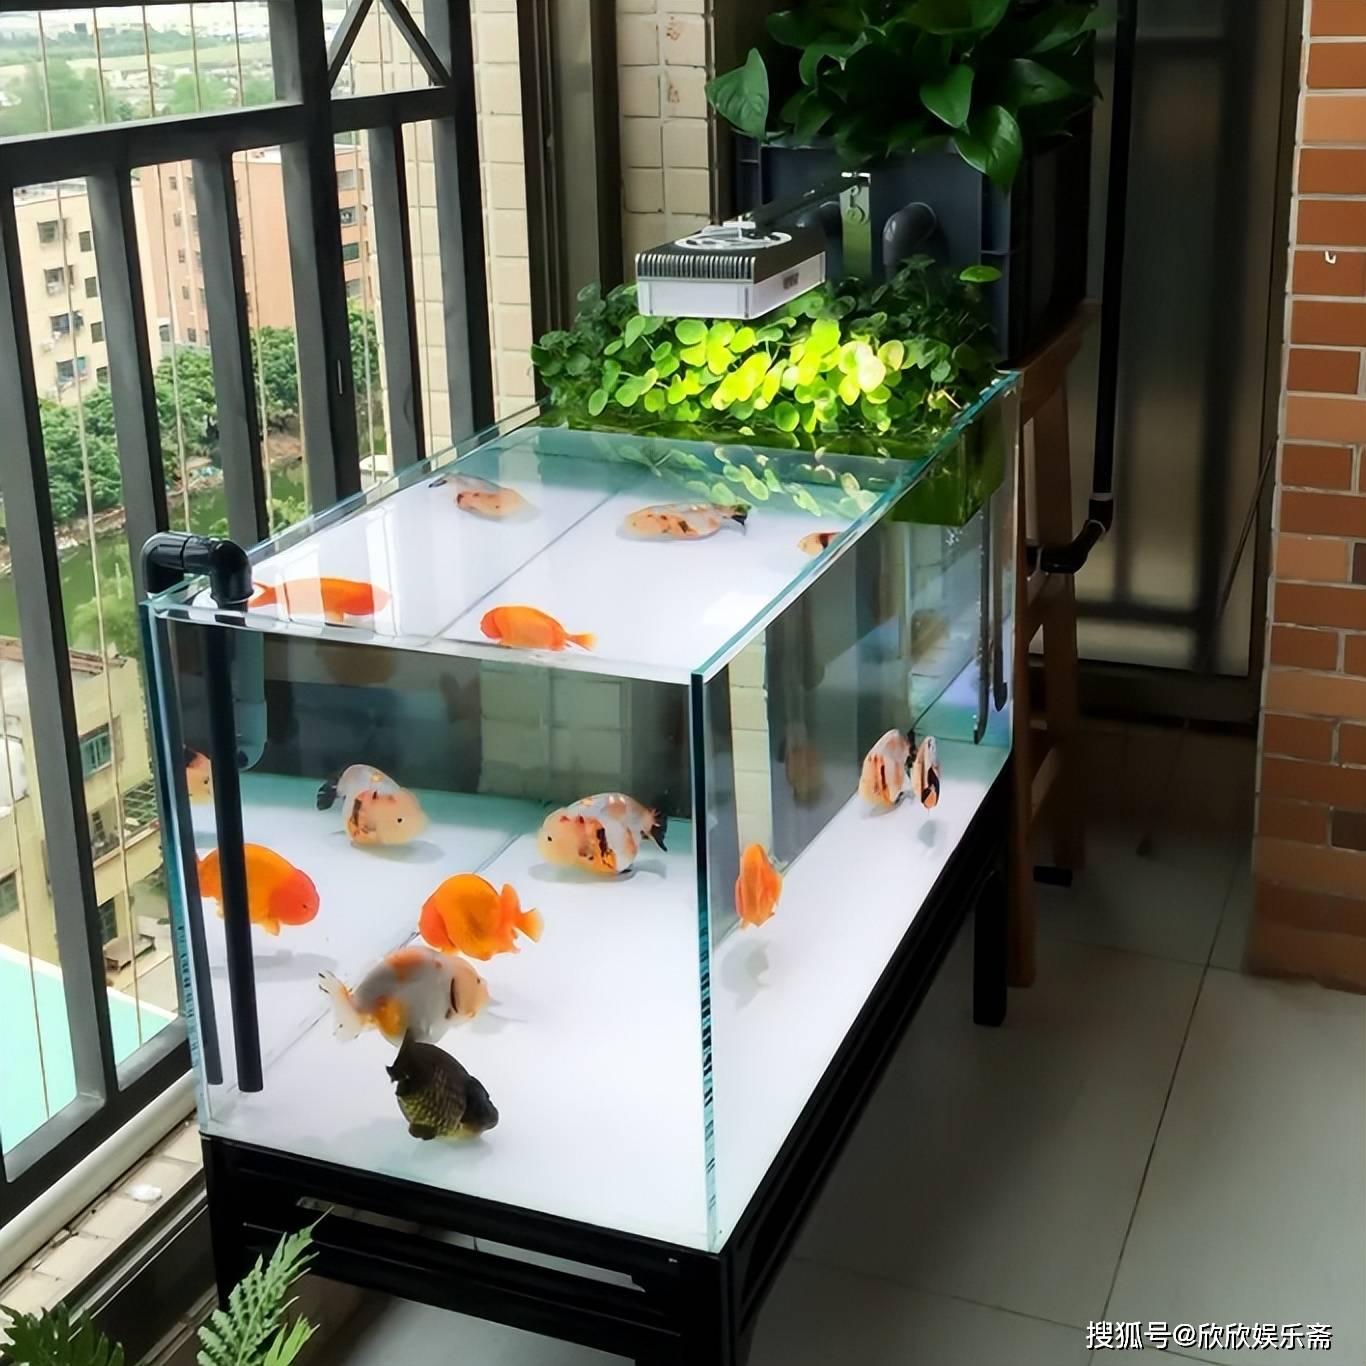 超白新款卧室客厅中型玻璃下过滤生态鱼缸免换水隔断中大型水族箱-阿里巴巴